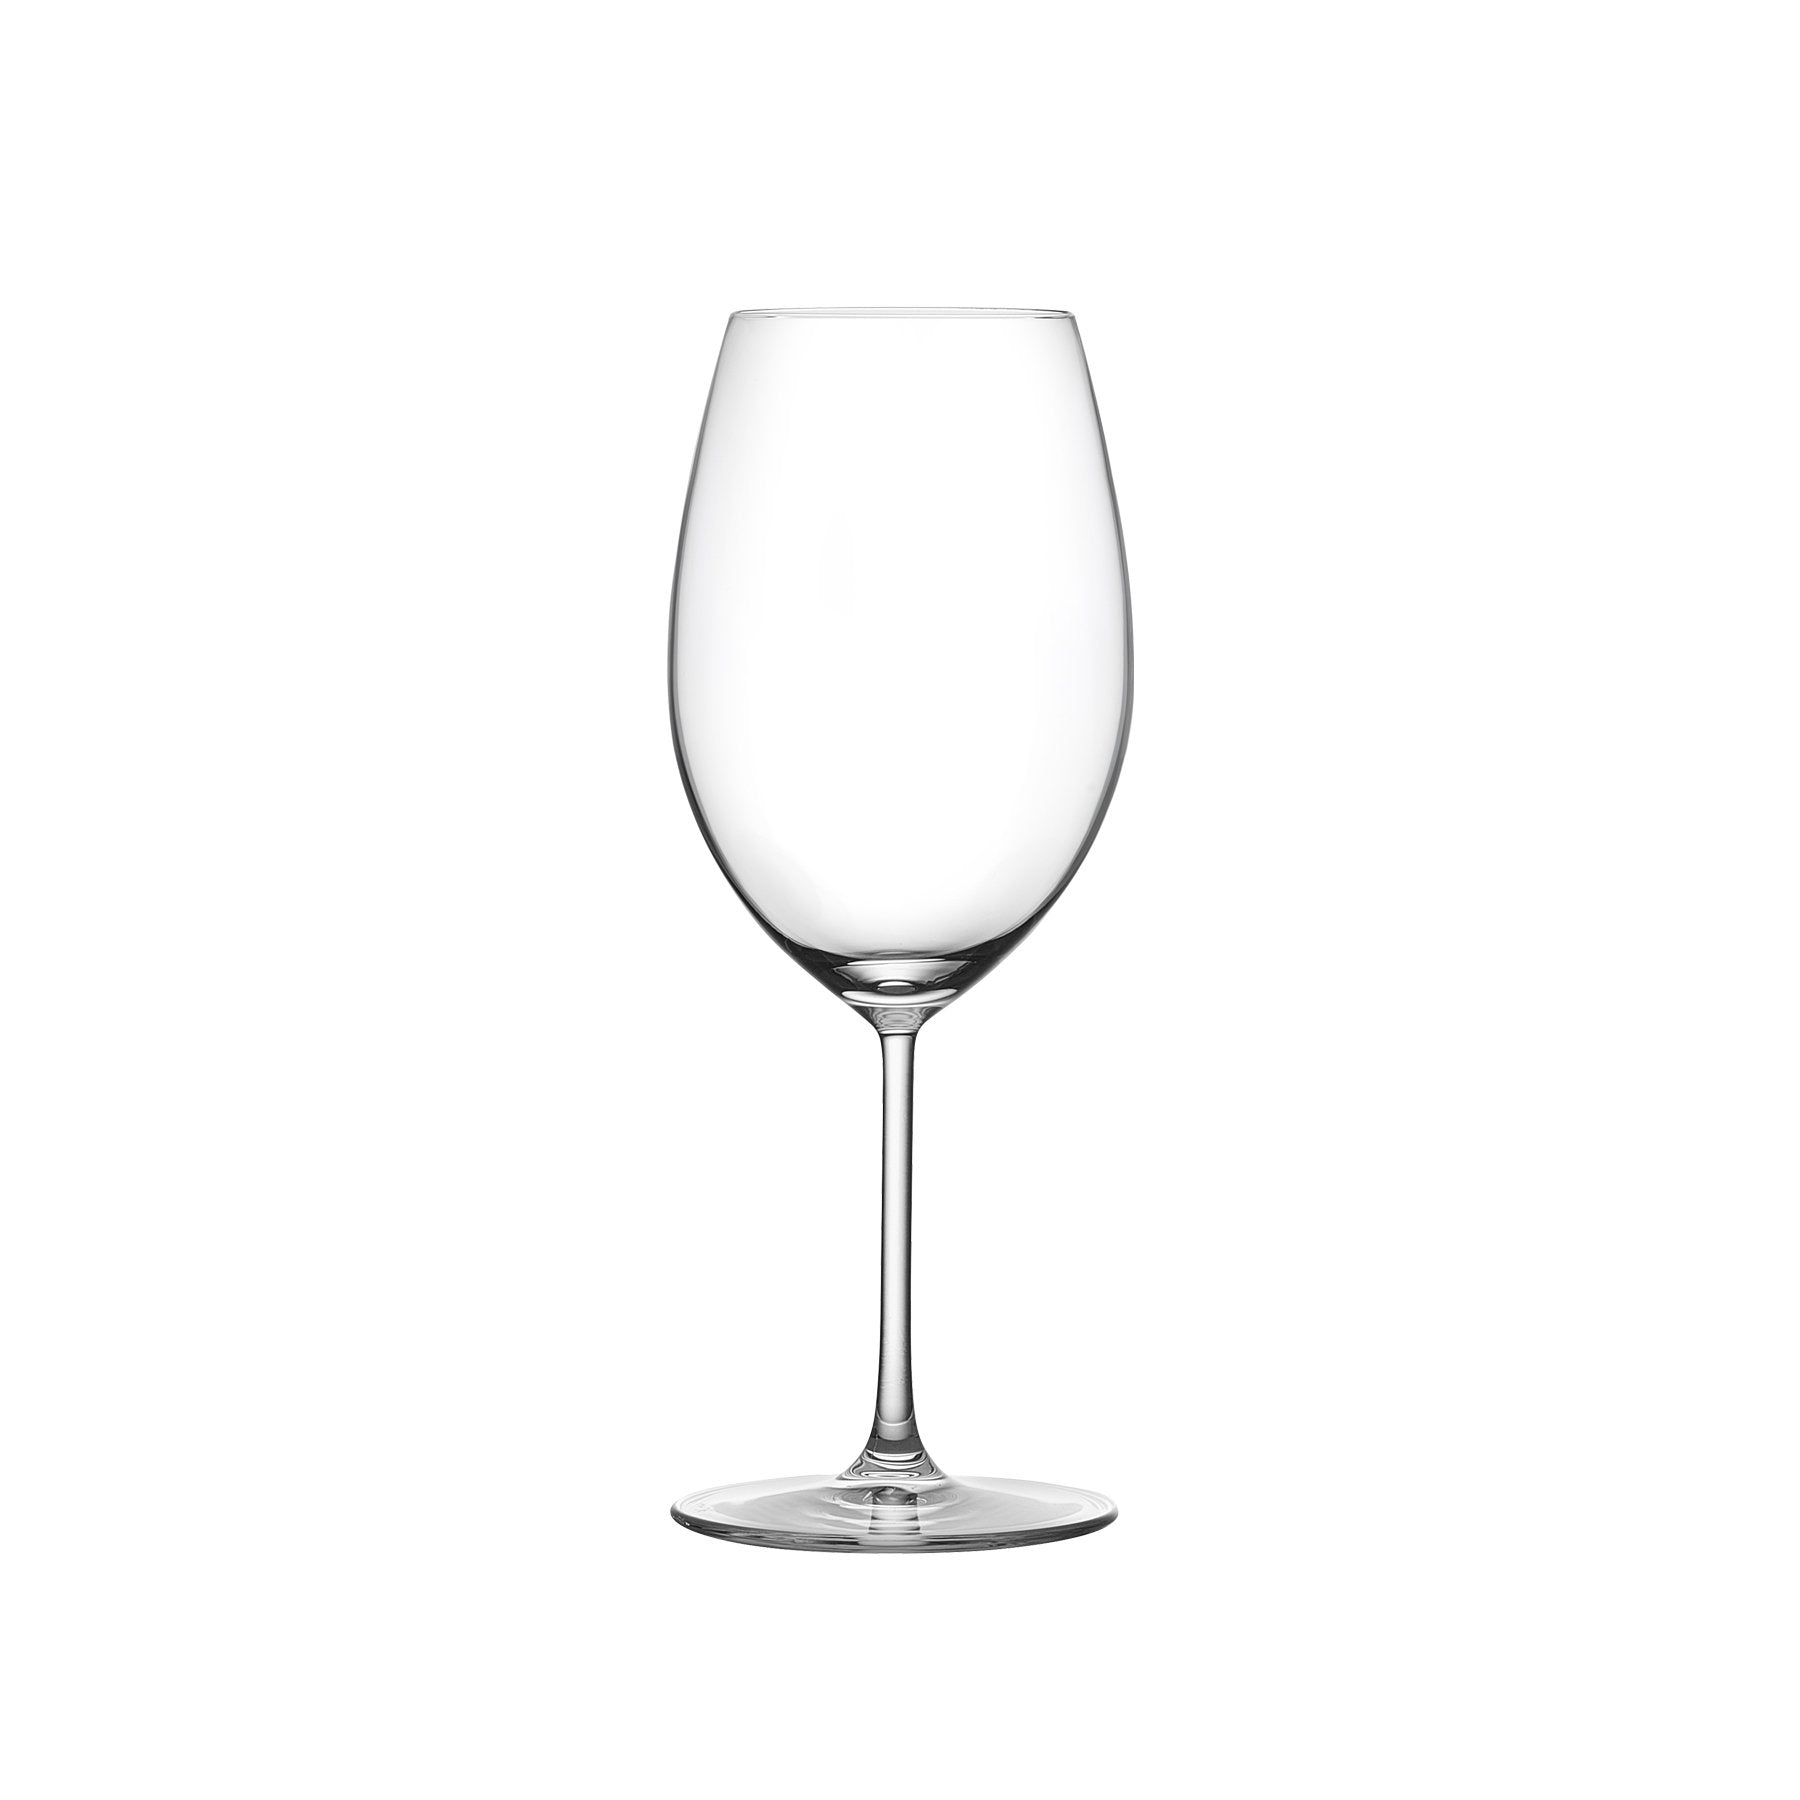 CLASSIC BORDEAUX WINE GLASS